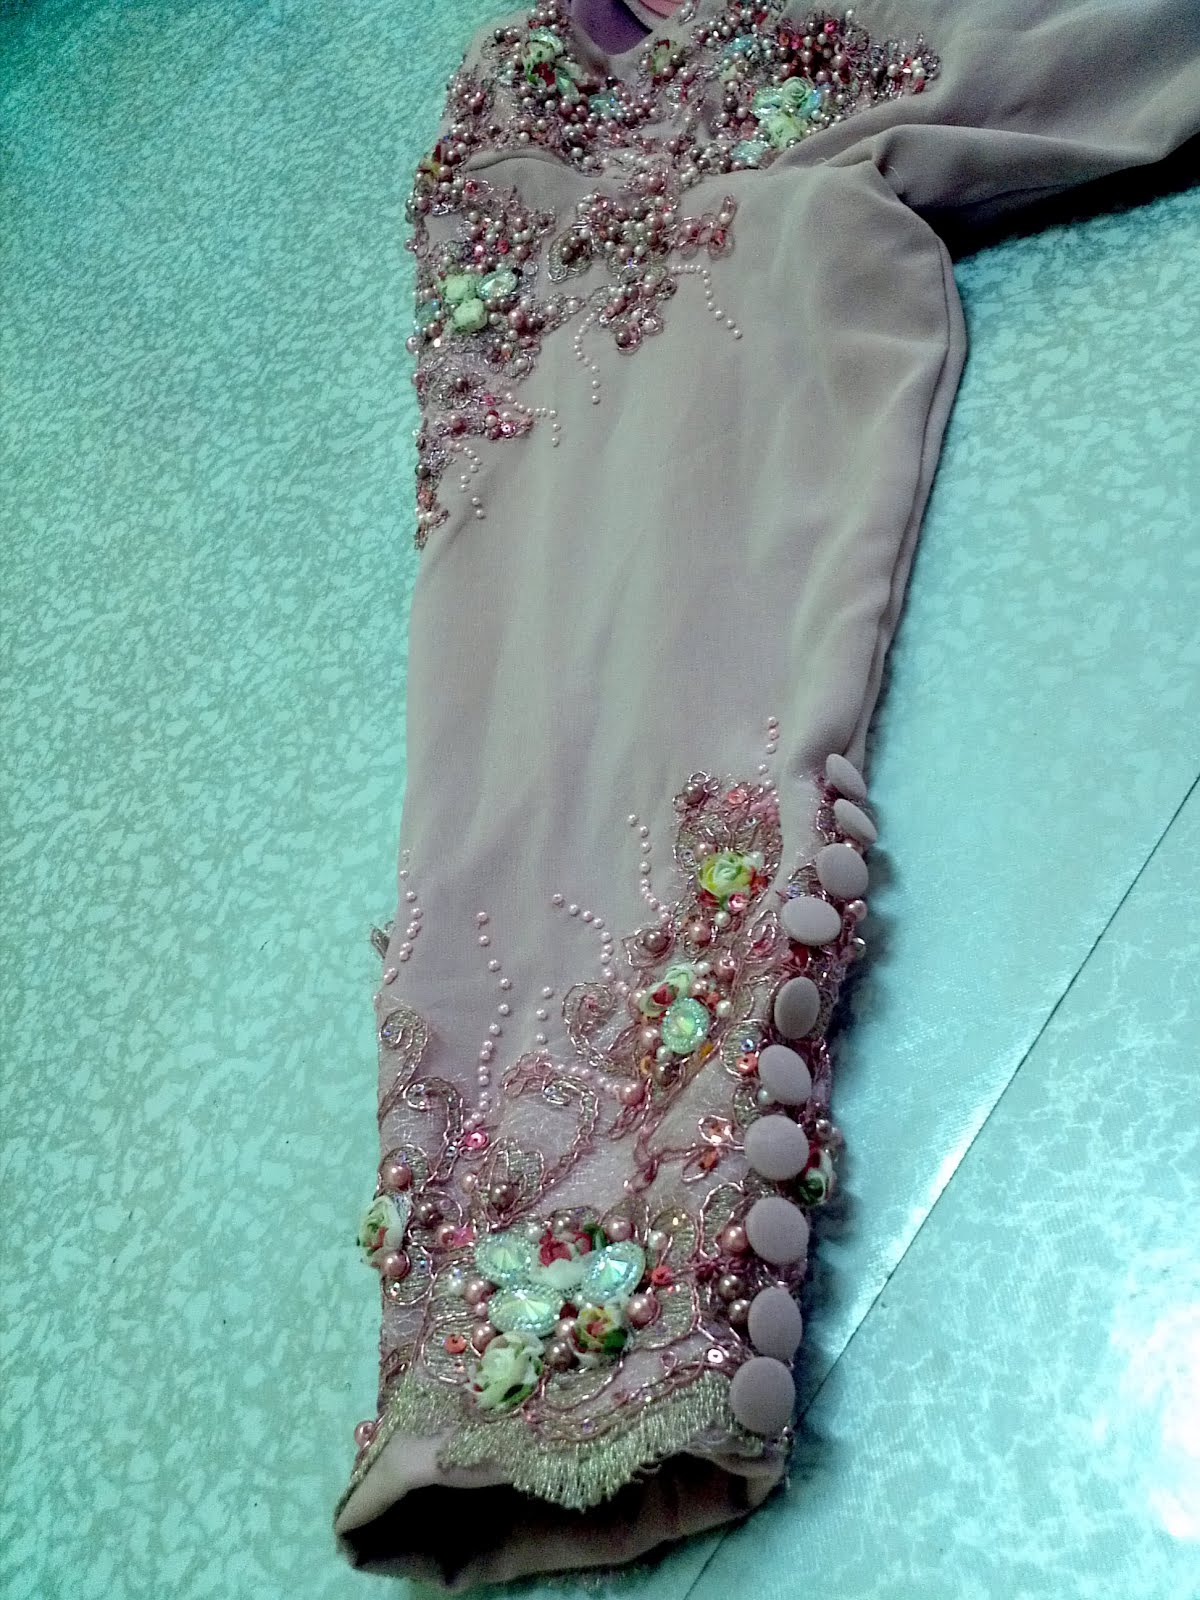 Jahitan MANIKqueen: bunga ros 3D campuran beads swaroski pearl